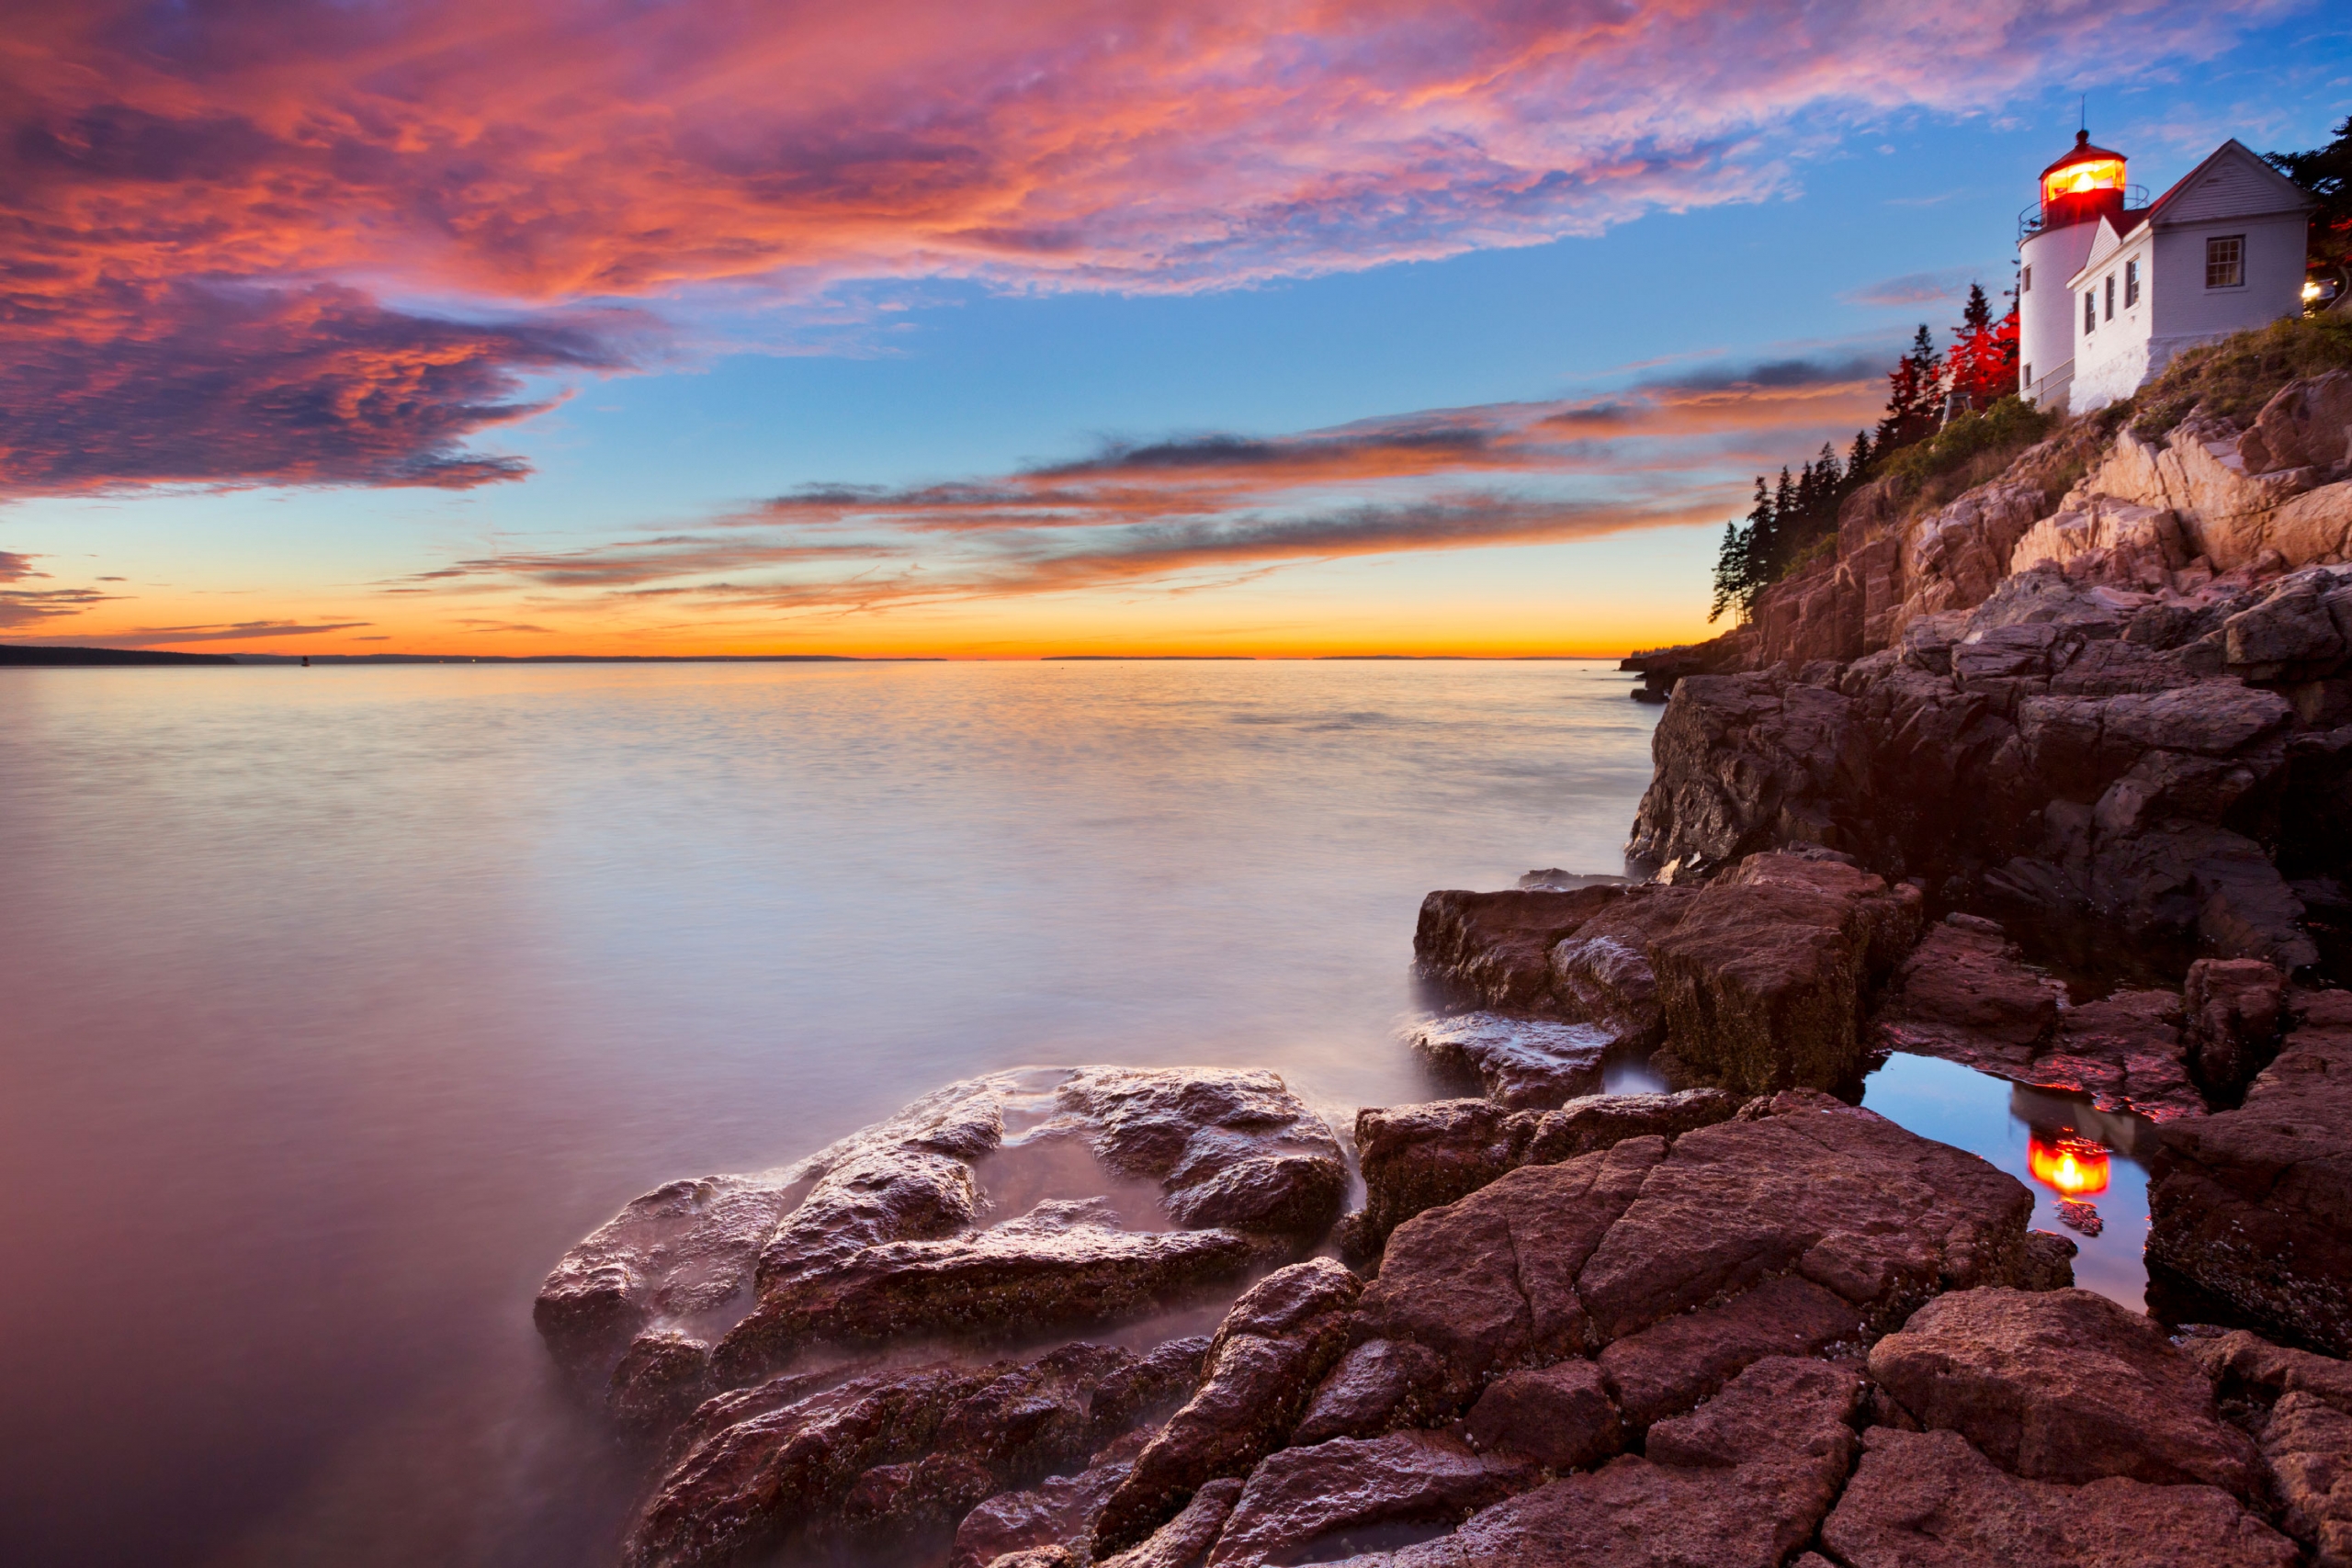 Maine: Acadia National Park
